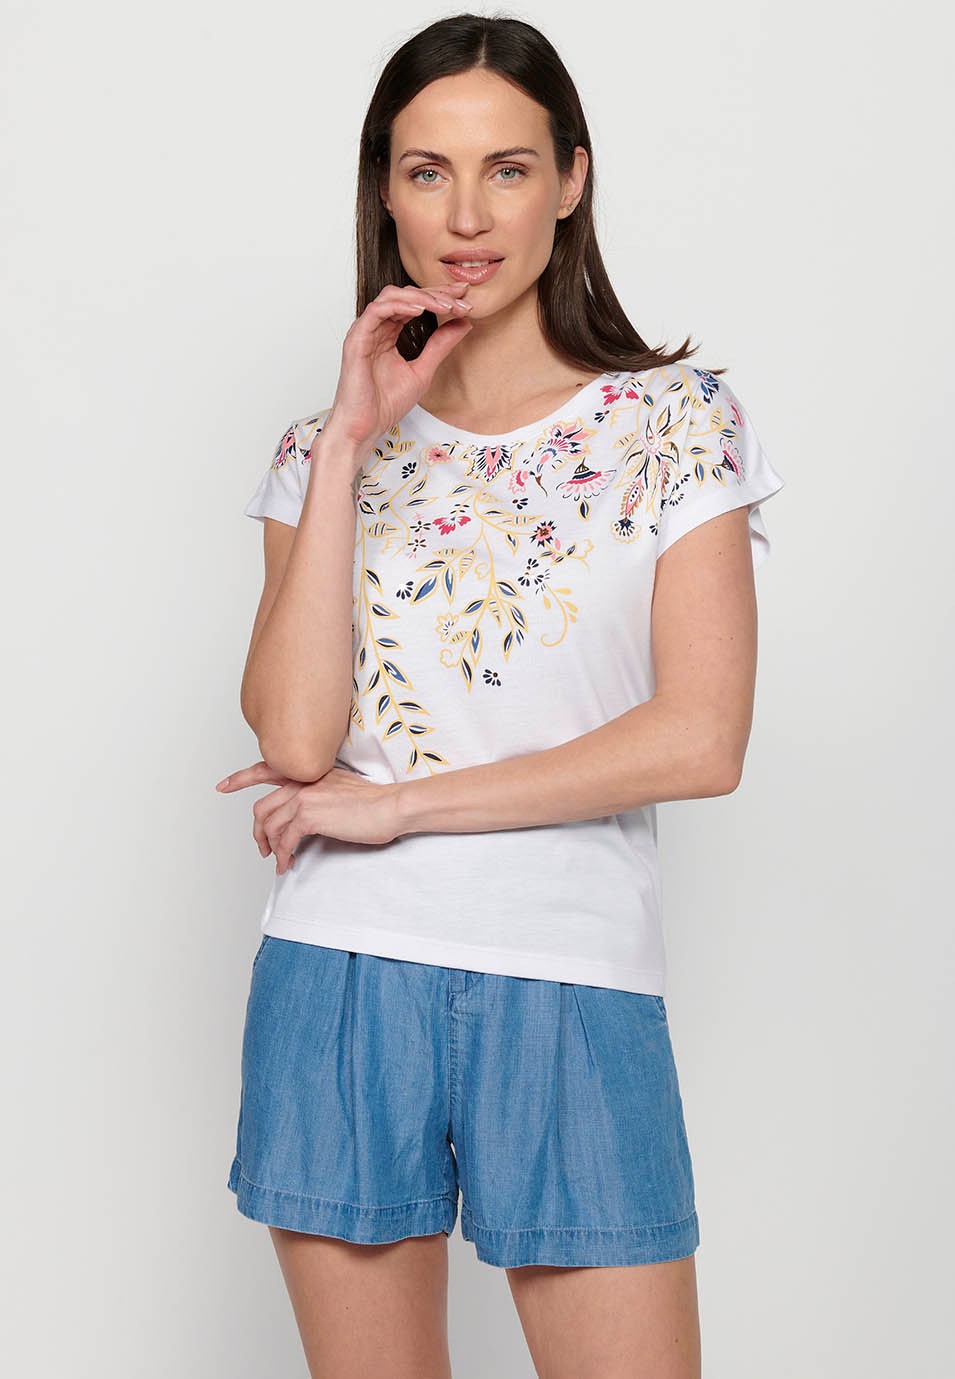 Samarreta Top de màniga curta de cotó de Coll rodó amb Brodat floral davanter color Blanc per a Dona